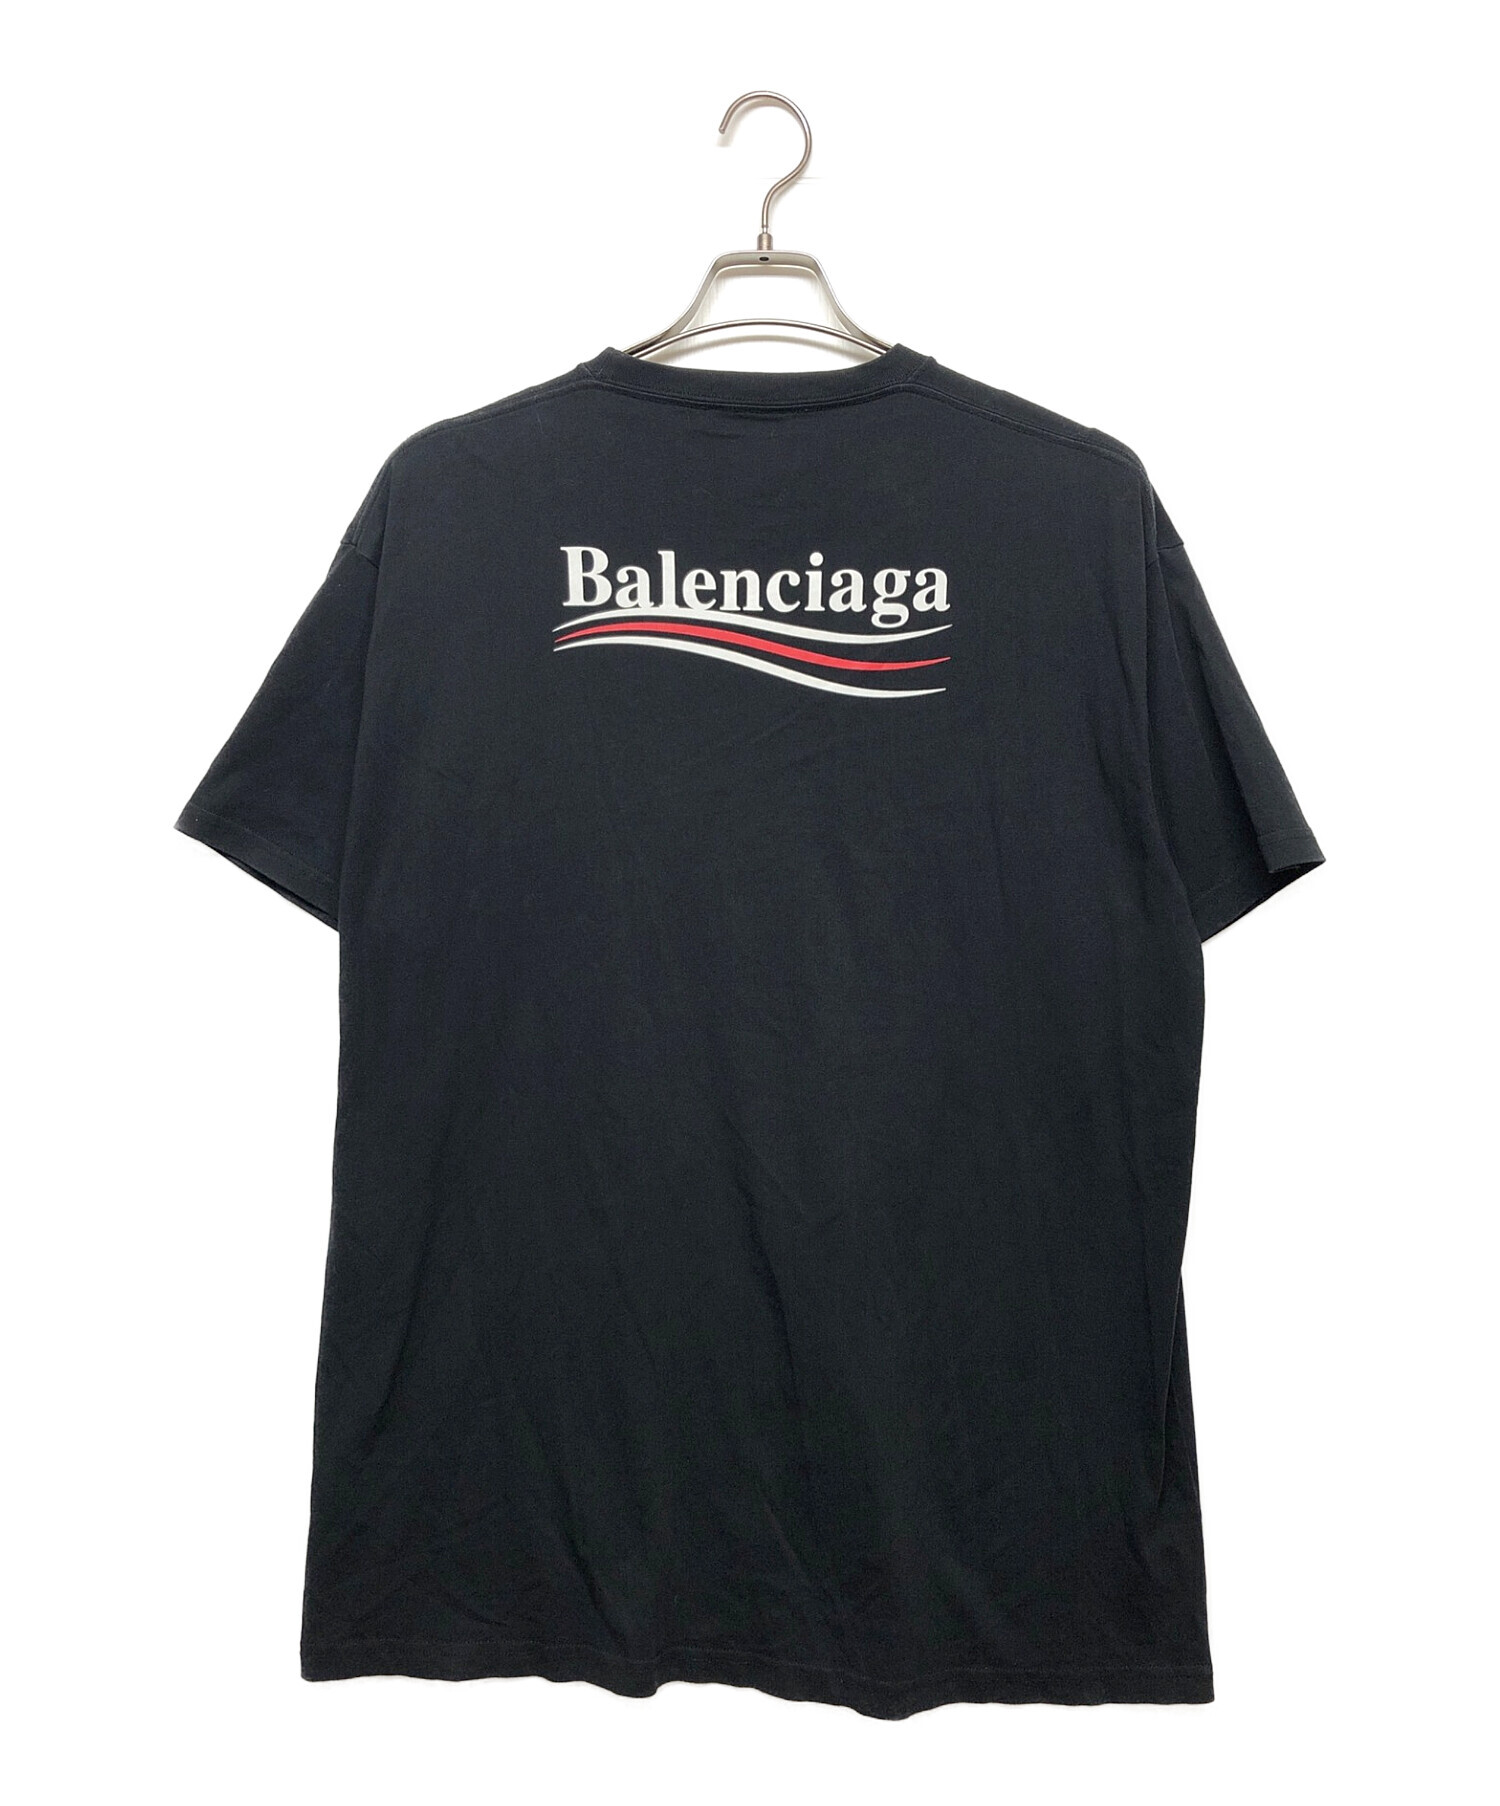 BALENCIAGA (バレンシアガ) Tシャツ ブラック サイズ:S